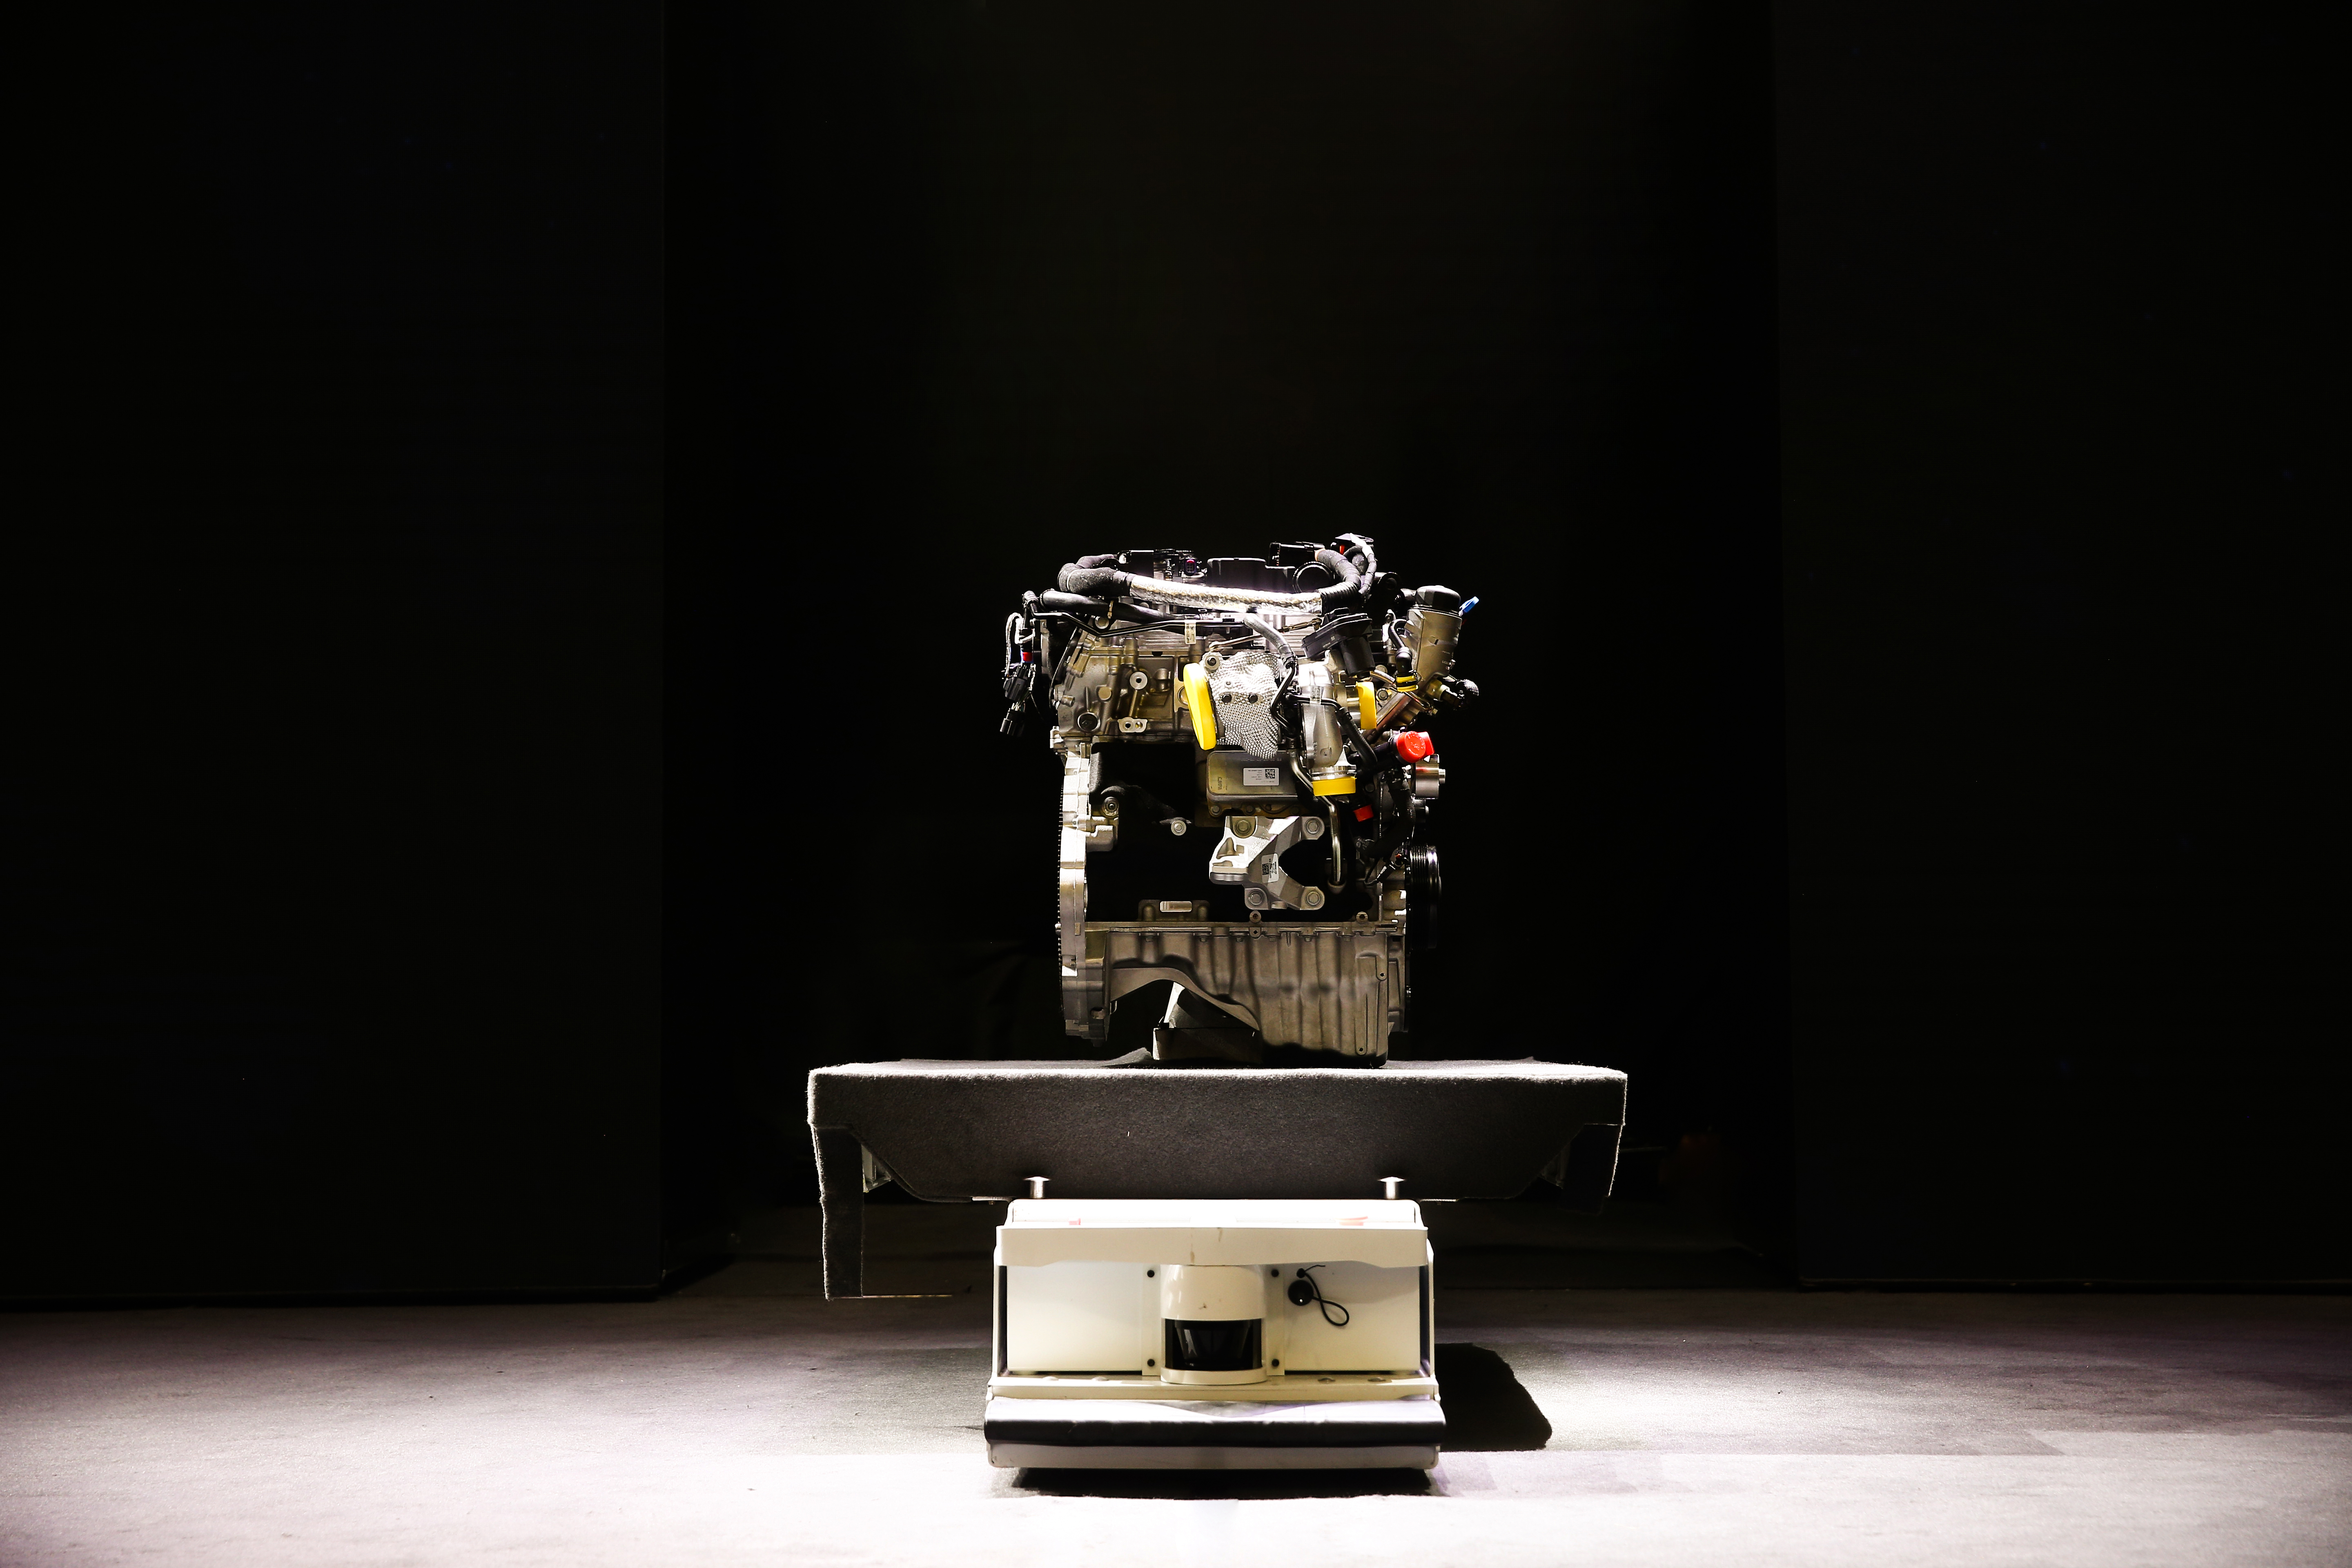 奇瑞捷豹路虎全新发动机工厂的首款产品为全新Ingenium 2.0升四缸发动机